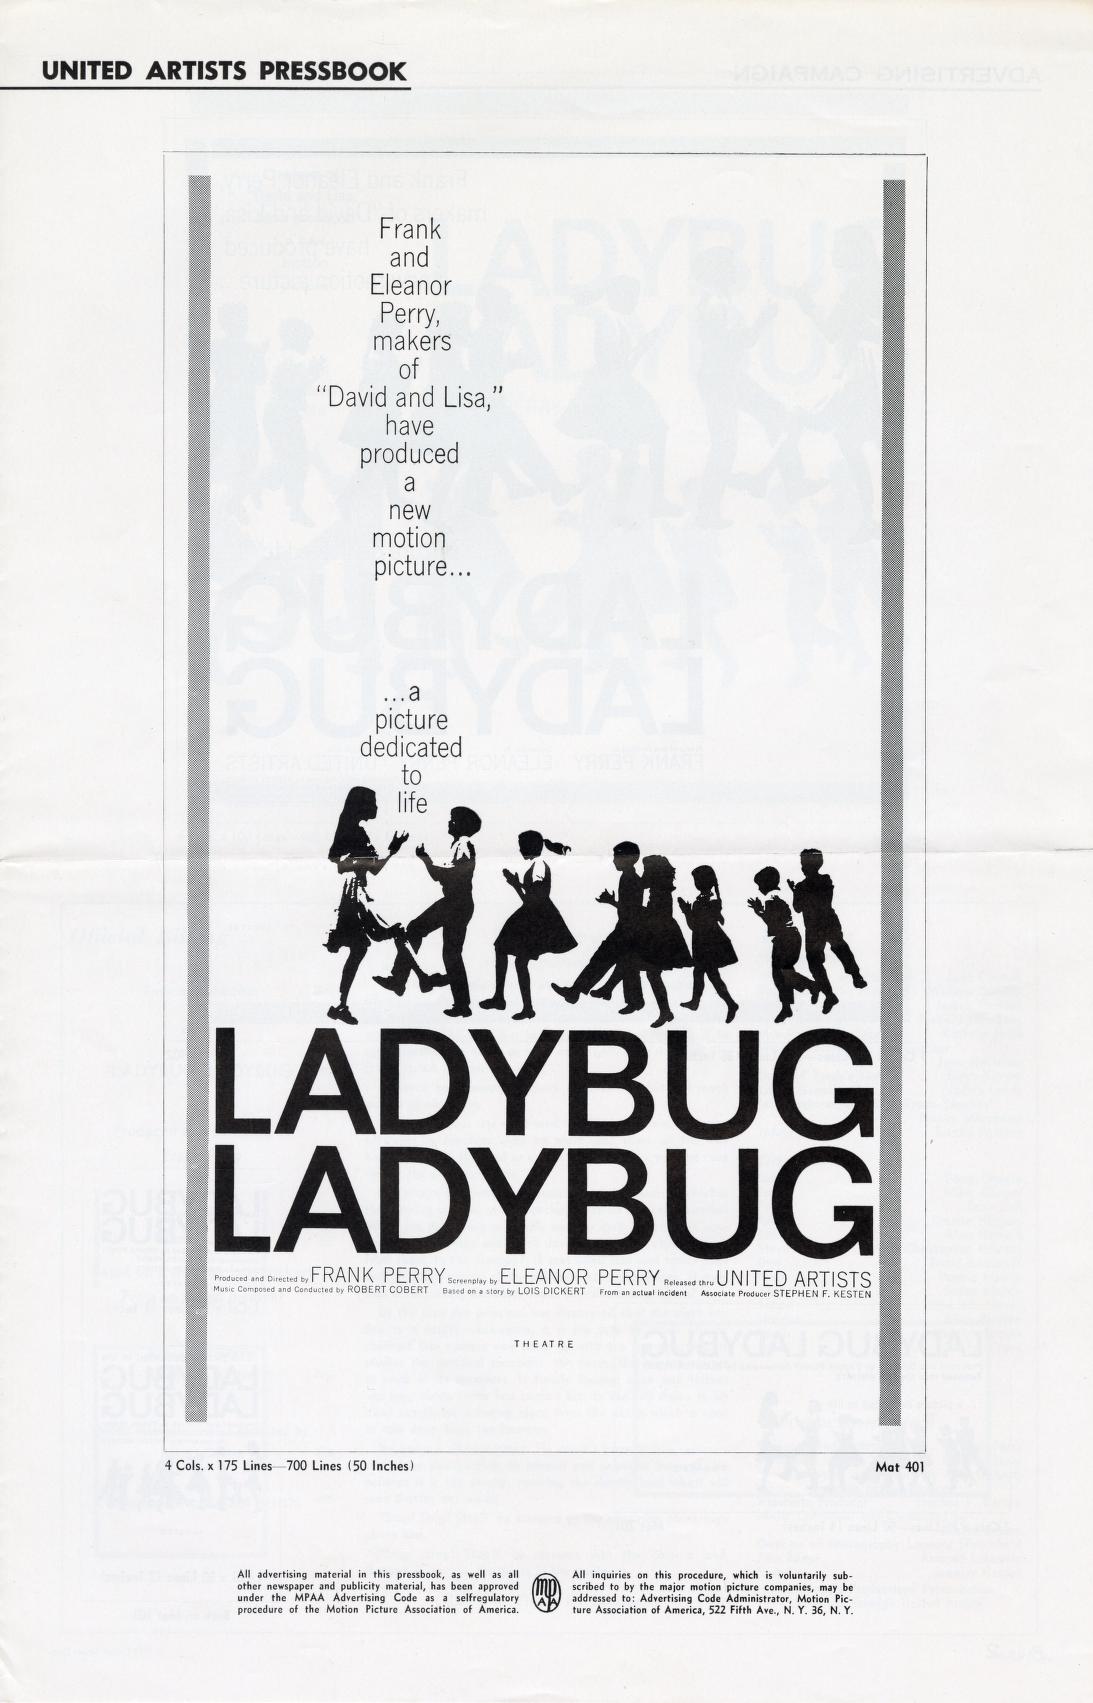 Ladybug Ladybug (United Artists)